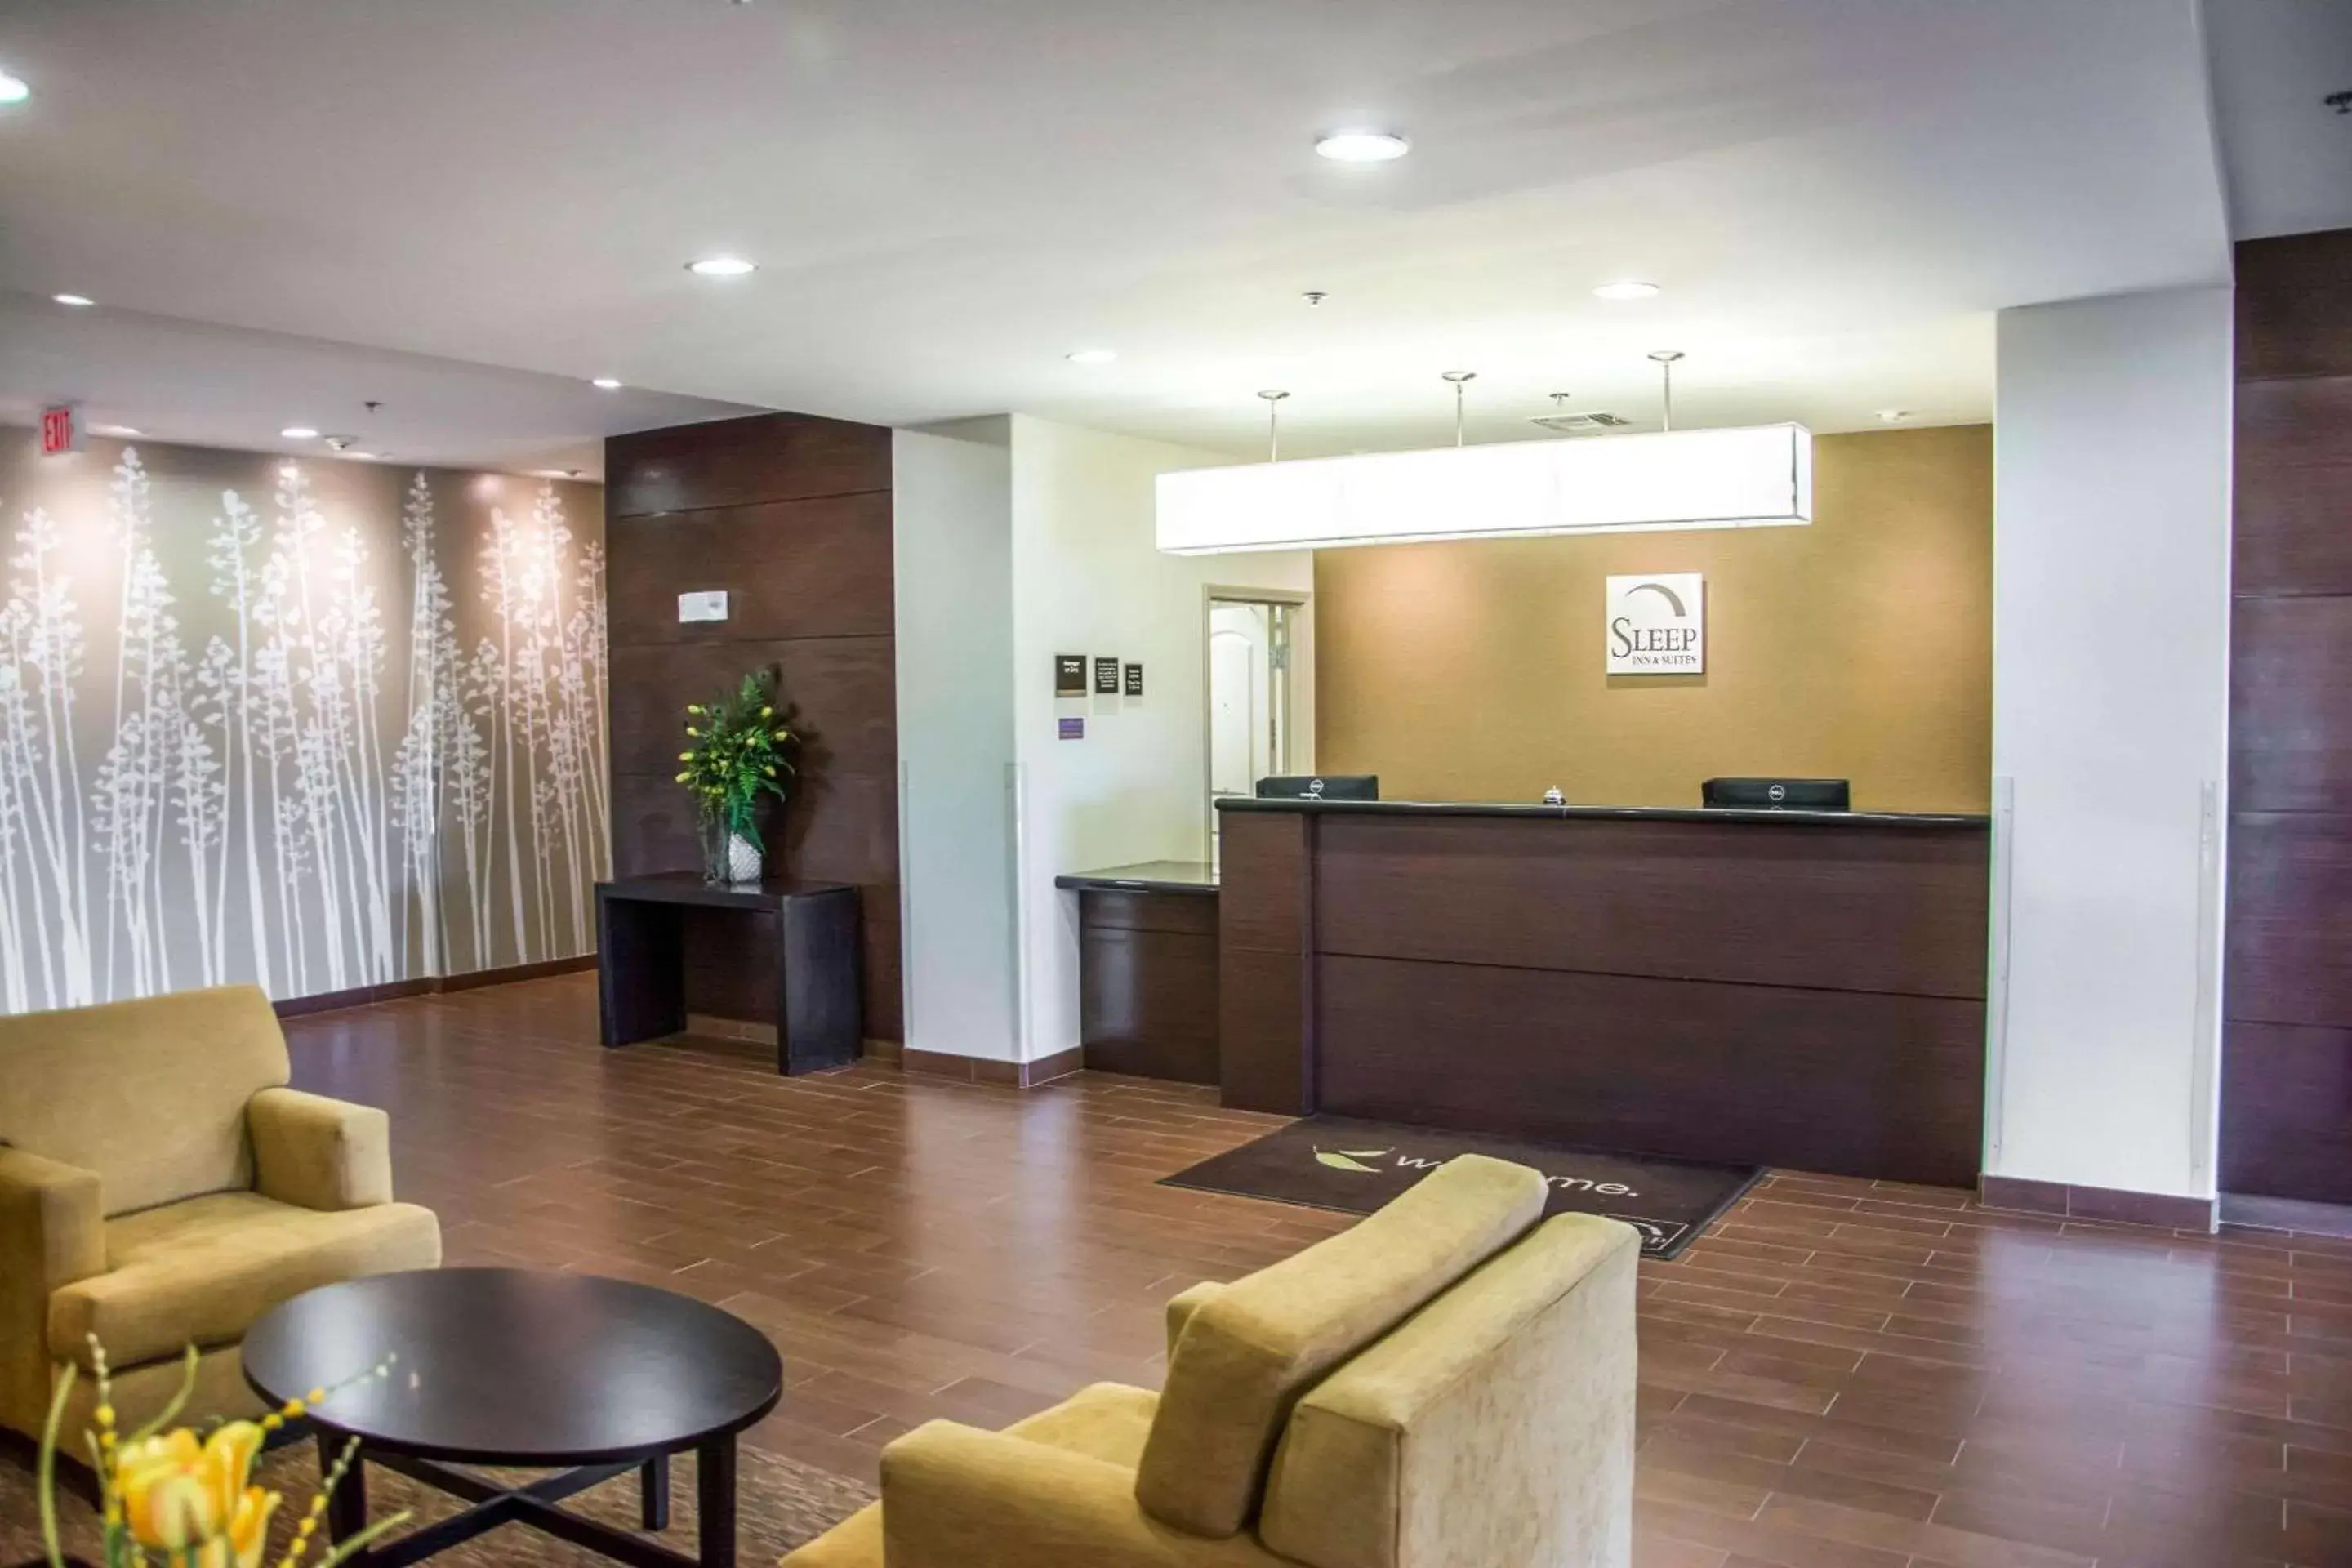 Lobby or reception, Lobby/Reception in Sleep Inn & Suites Center